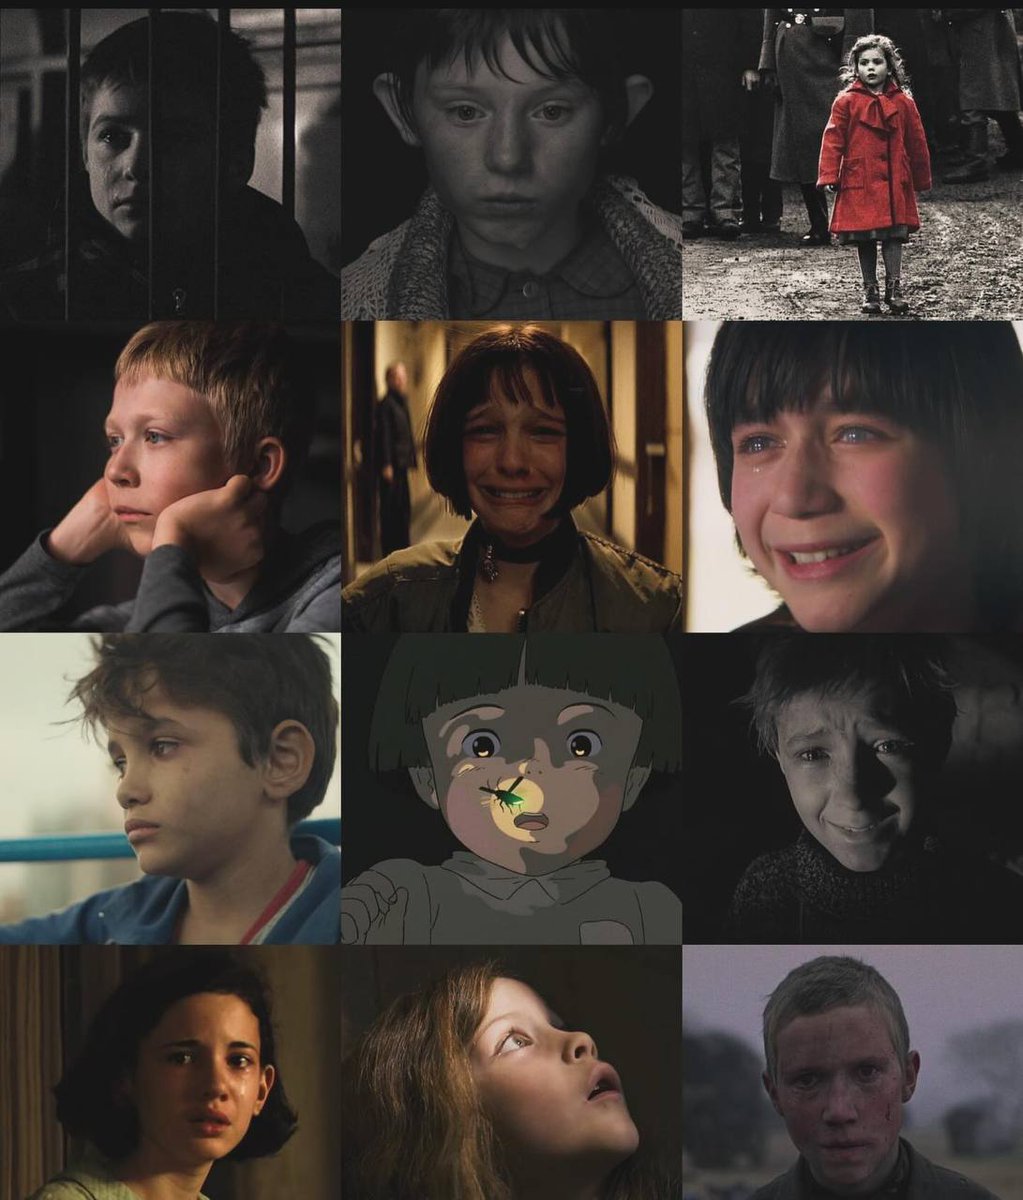 Cine kids and tears.